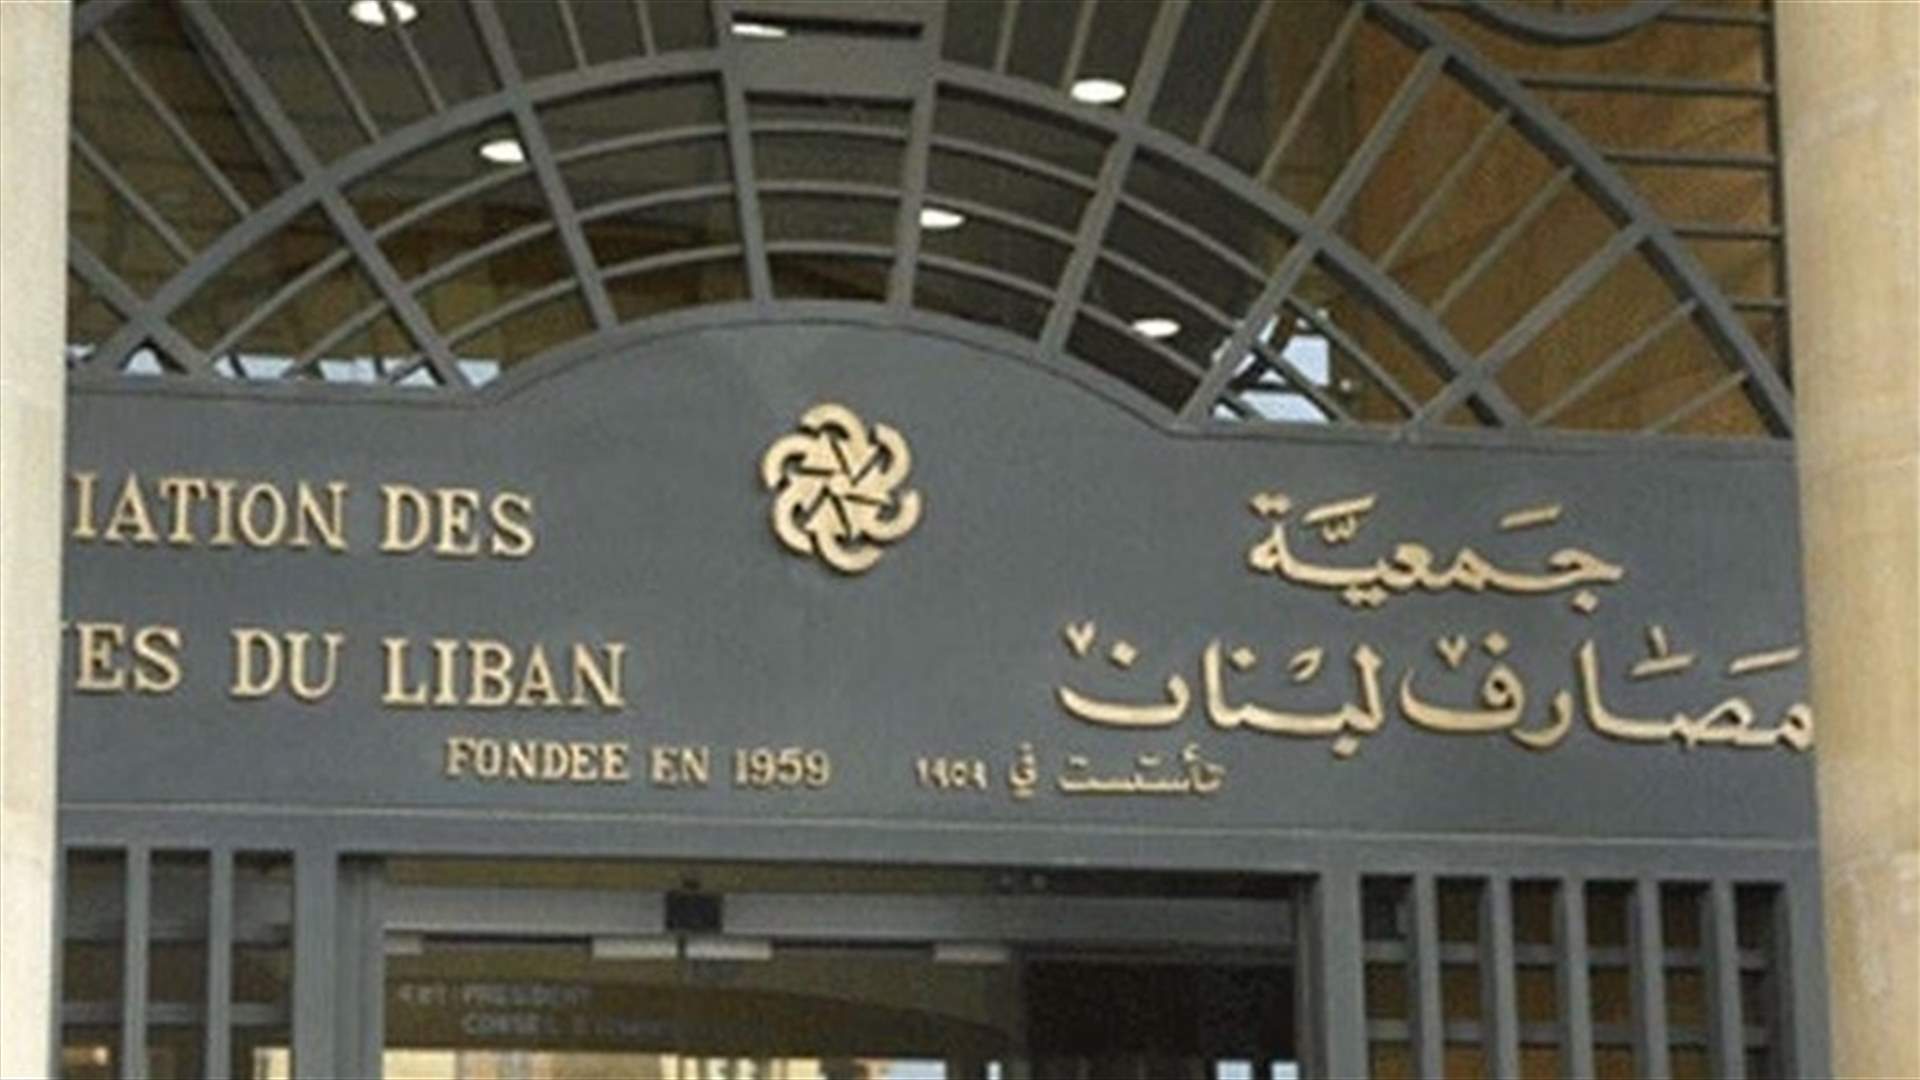 ما صحة نقل جمعية المصارف مكتبها من بنك بيروت في وسط بيروت إلى محيط المجلس النيابي؟